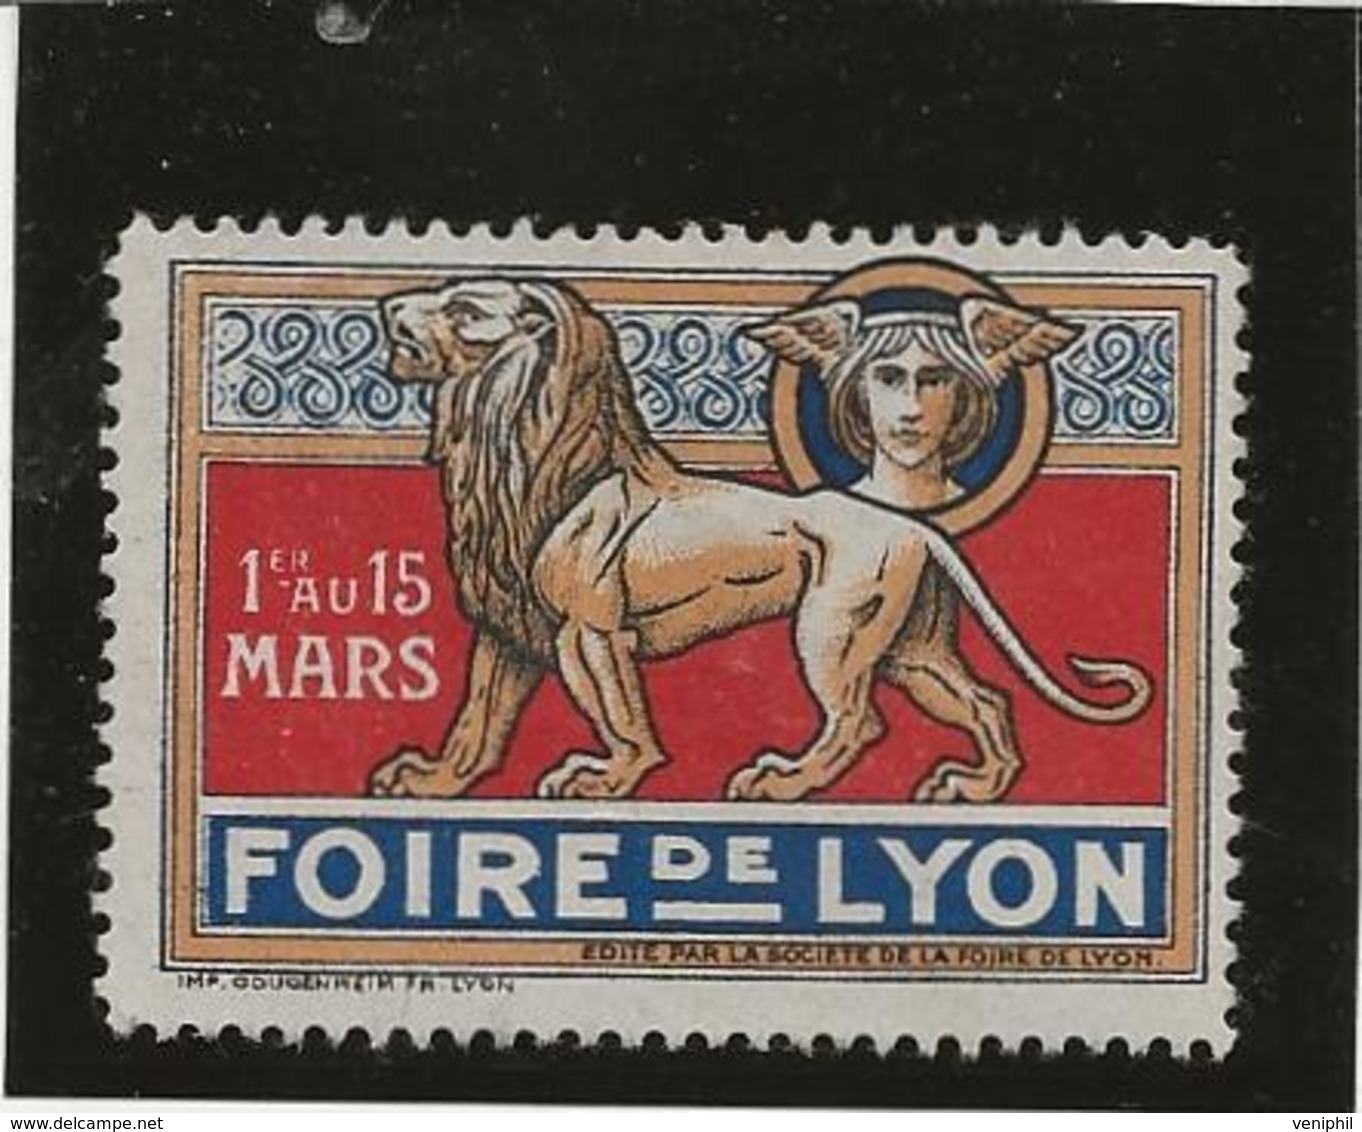 VIGNETTE FOIRE DE LYON 1920 - Tourismus (Vignetten)